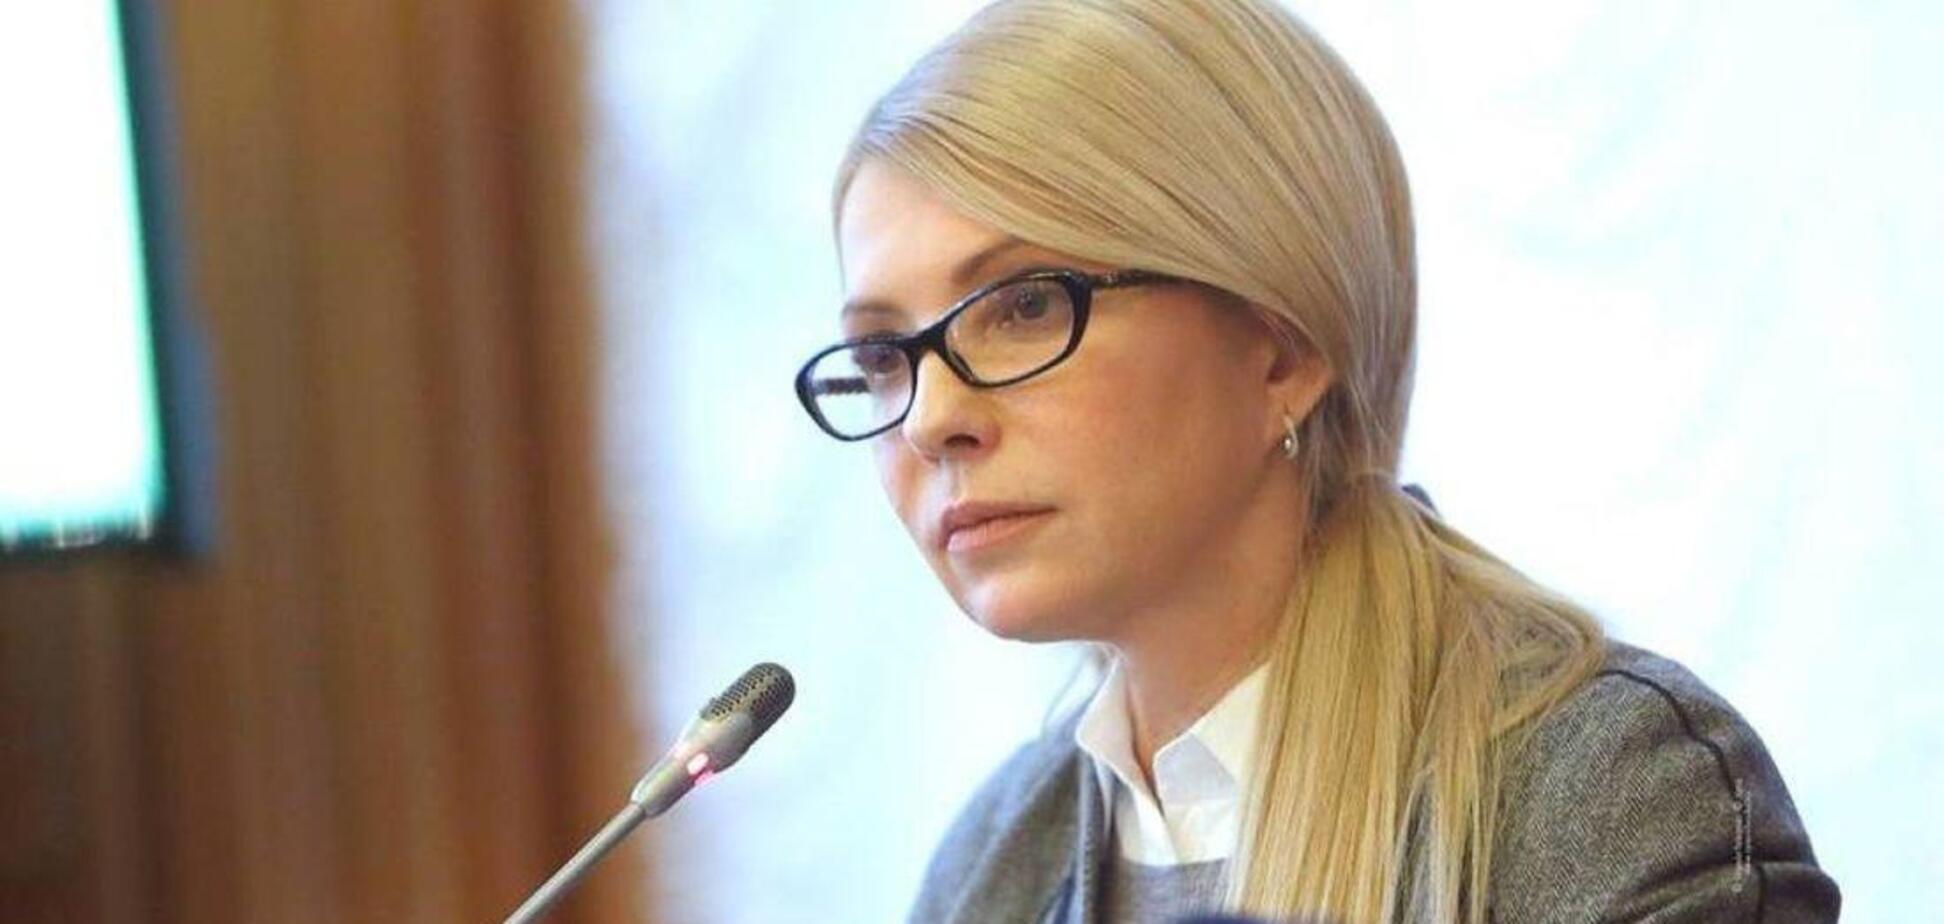 Тимошенко обеспокоена последними событиями в Украине